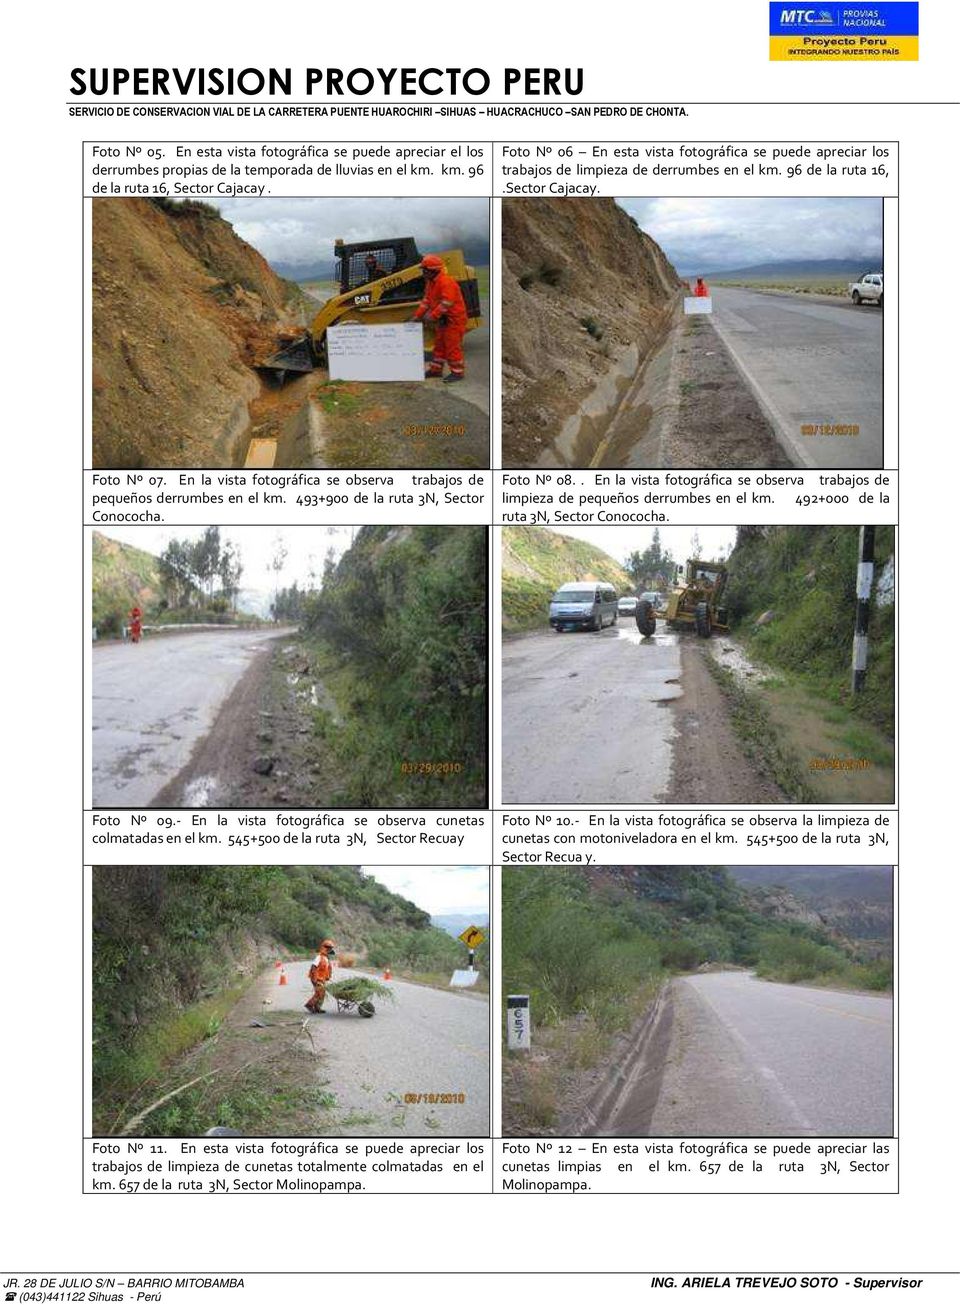 En la vista fotográfica se observa trabajos de pequeños derrumbes en el km. 493+900 de la ruta 3N, Sector Conococha. Foto Nº 08.